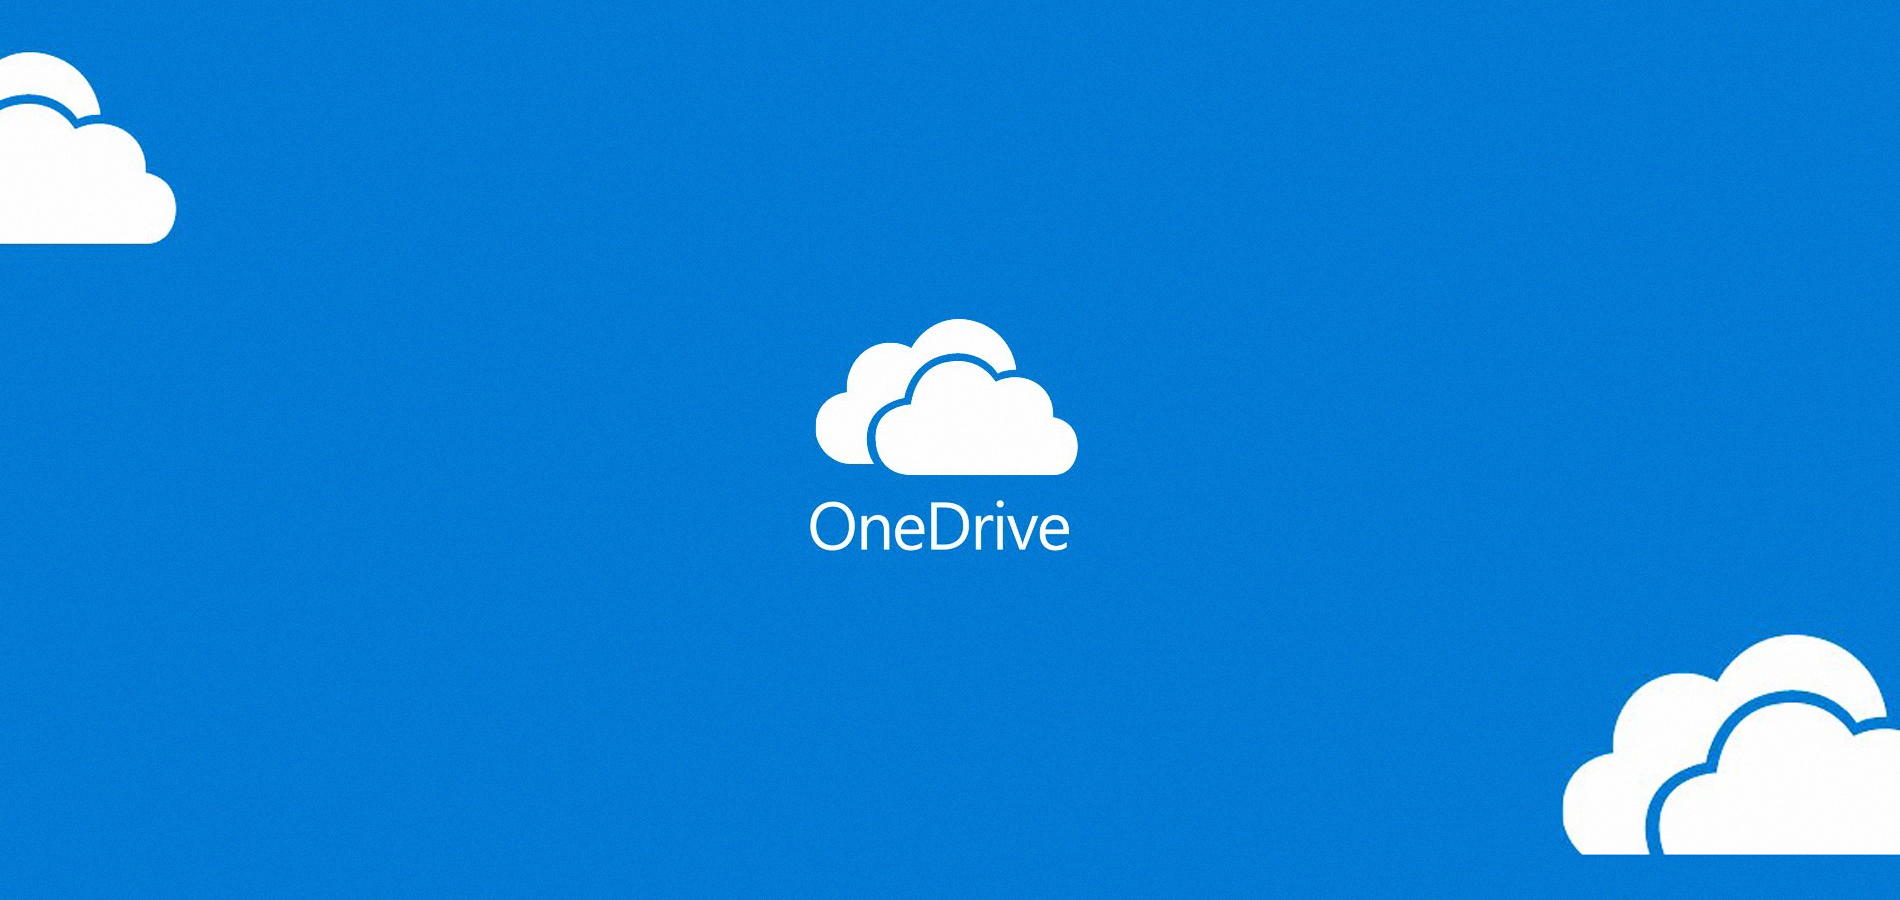 OneDrive. Microsoft-ի կողմից ստեղծված ամպային ծառայություն՝ ձեր ֆայլերը պահելու և համօգտագործելու համար